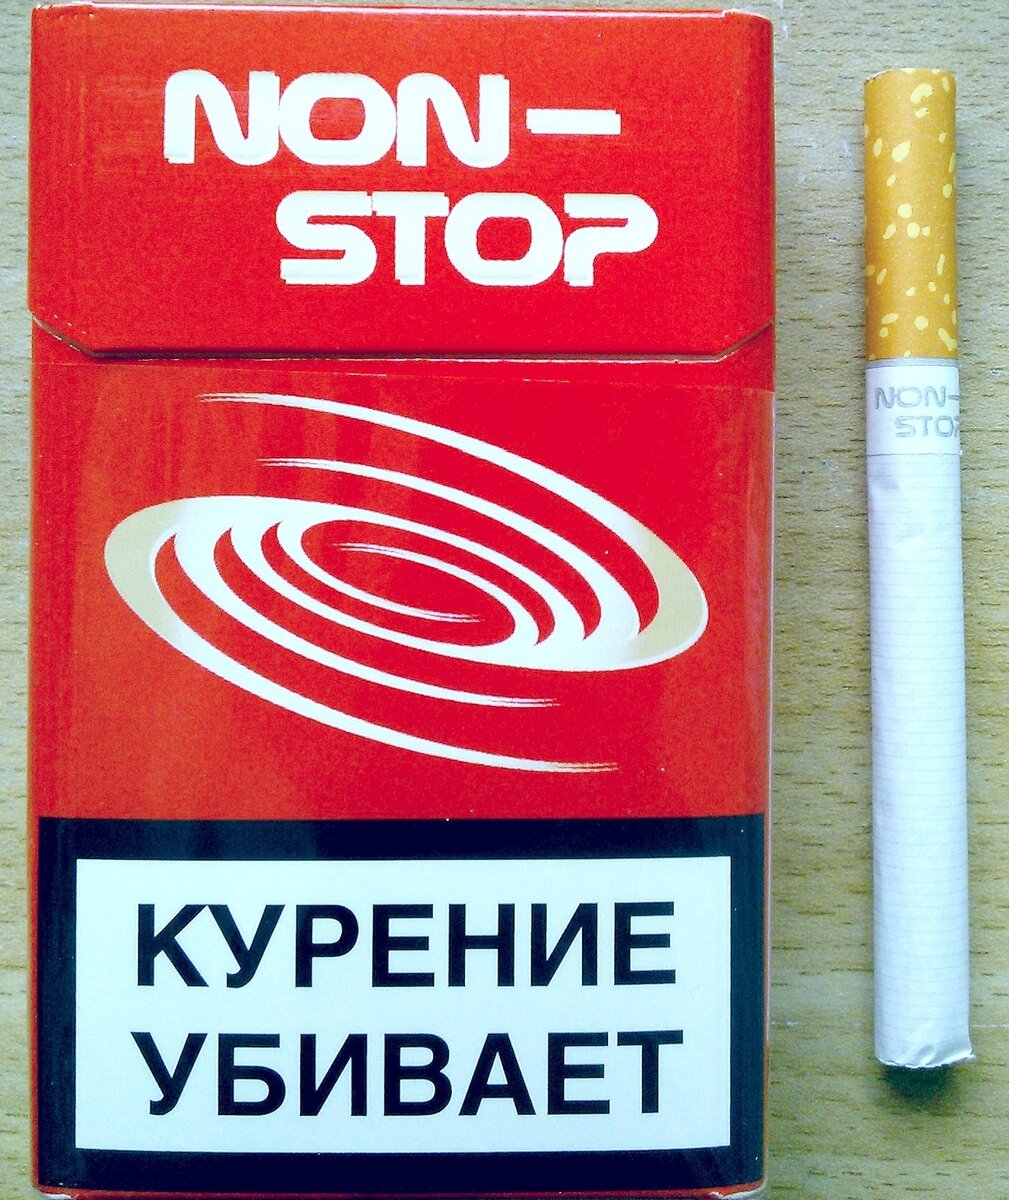 Сигареты крым купить. Сигареты. Крымские сигареты. Сигареты 2222. Нон стоп сигареты.